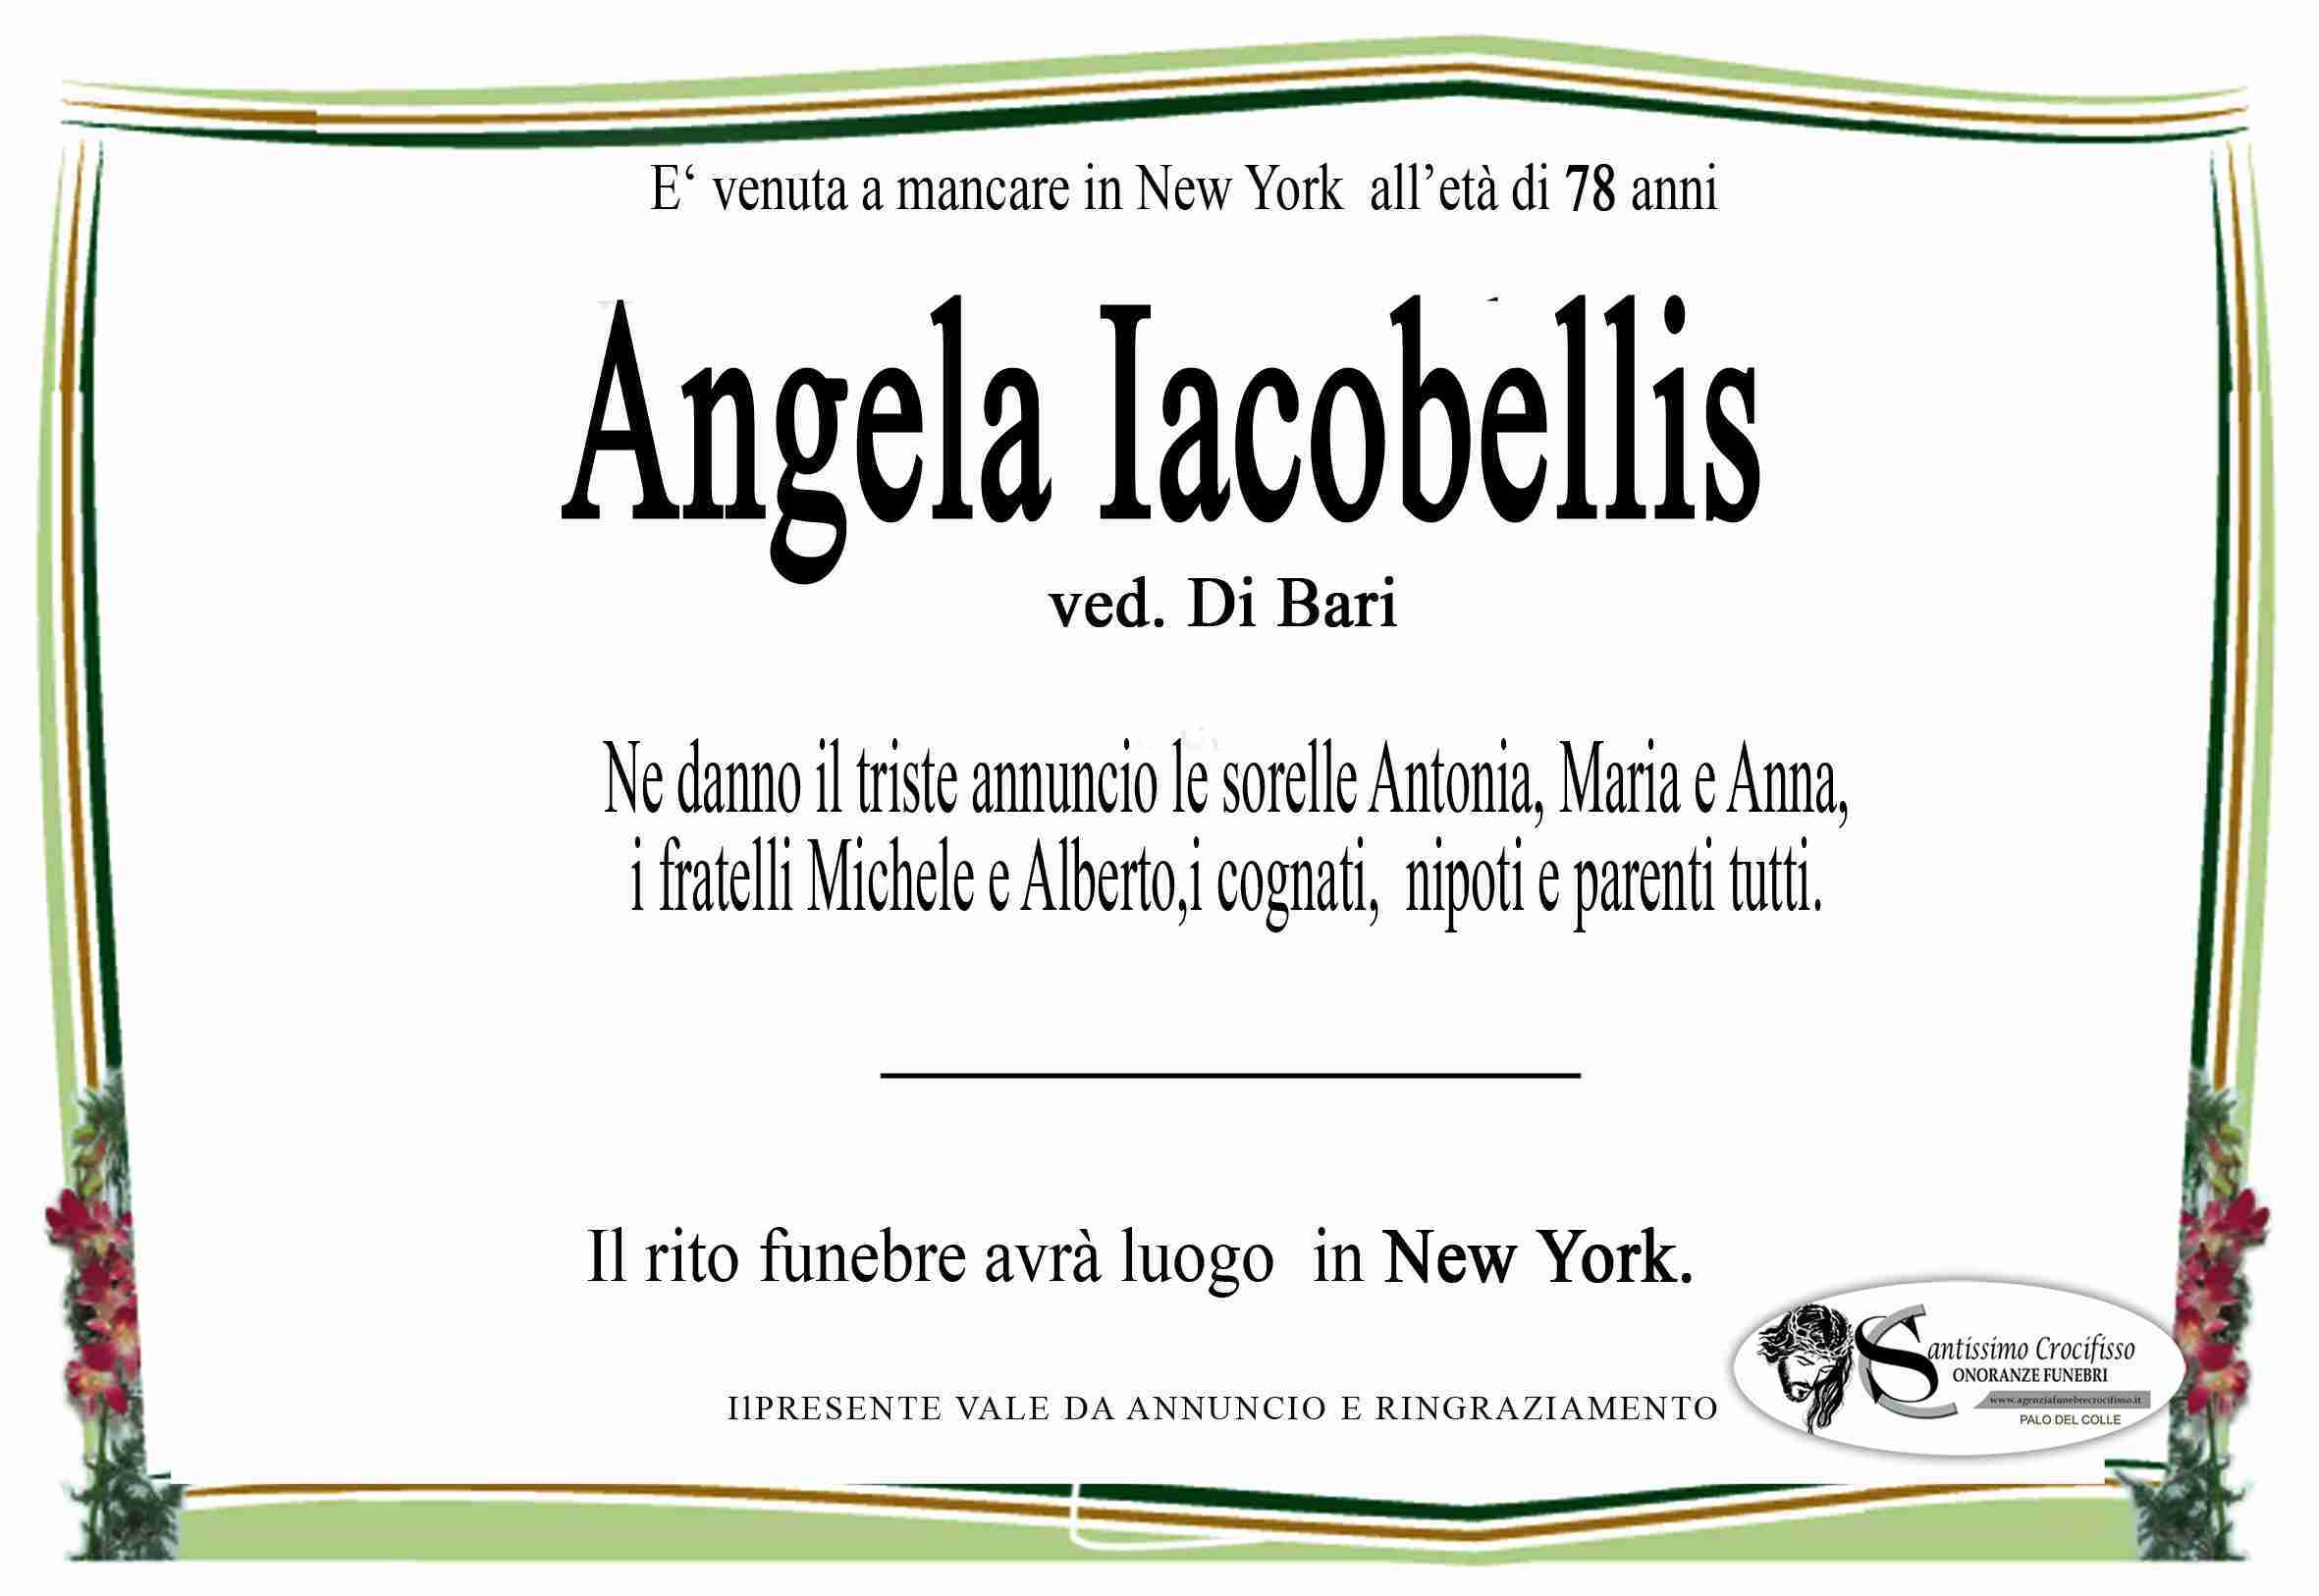 Angela Iacobellis